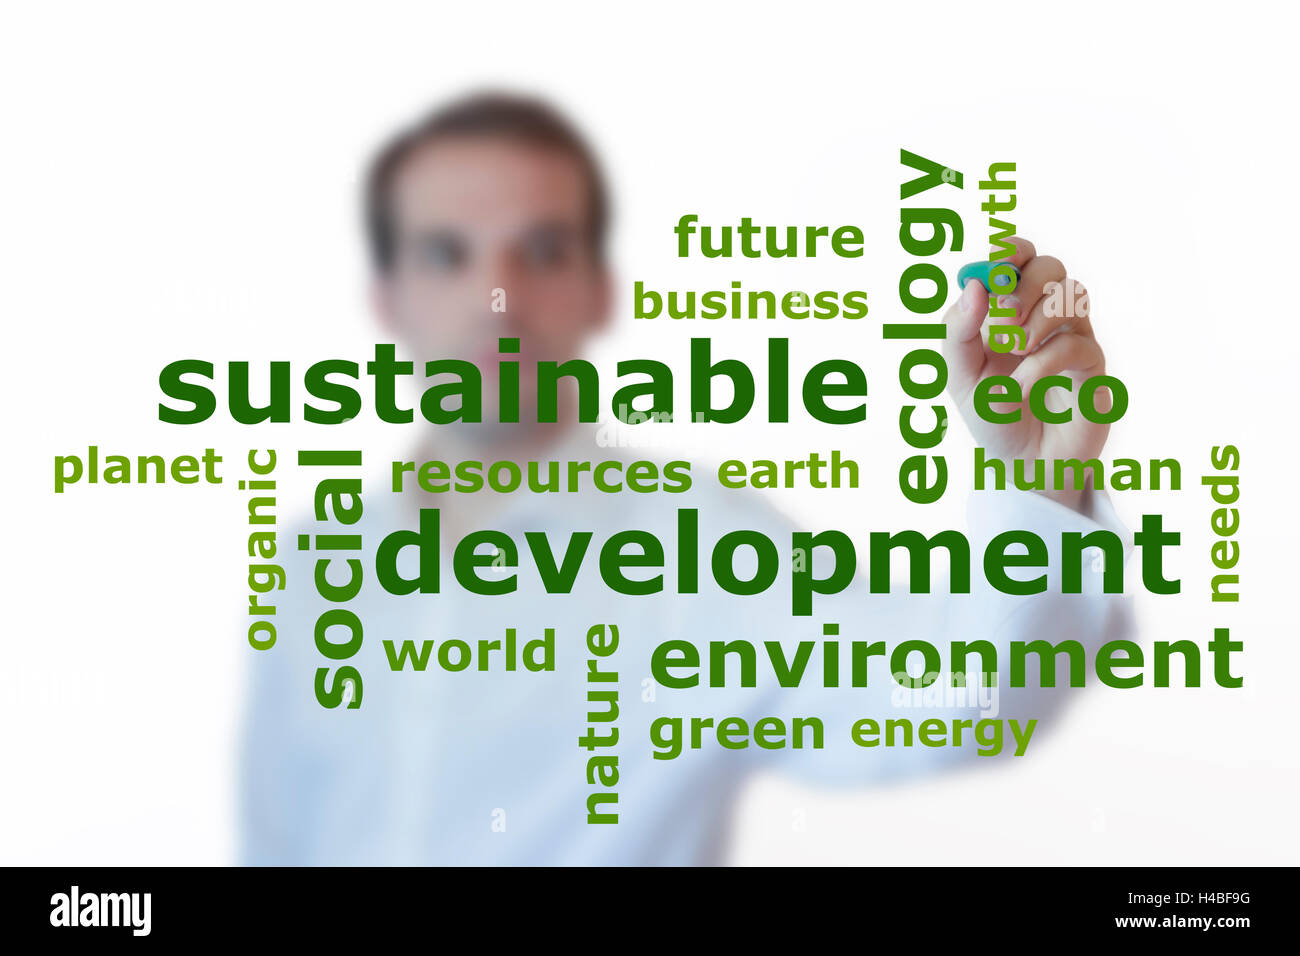 Imprenditore iscritto lo sviluppo sostenibile parola cloud con una penna di colore verde. Isolato su sfondo bianco Foto Stock